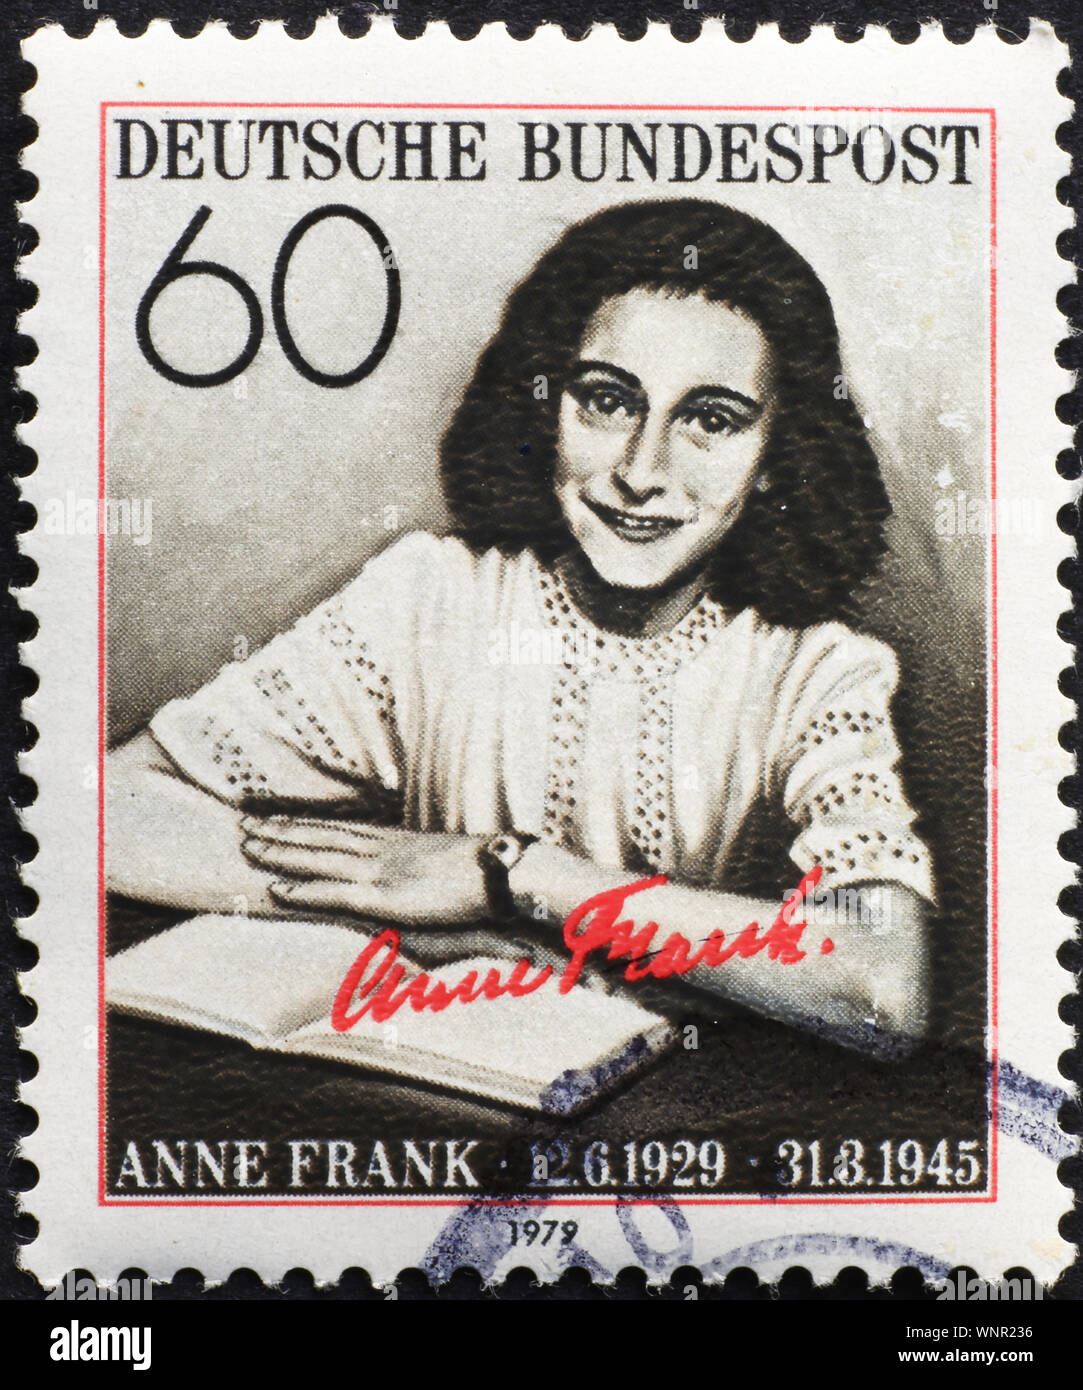 Anne Frank à l'ancien timbre allemand Banque D'Images